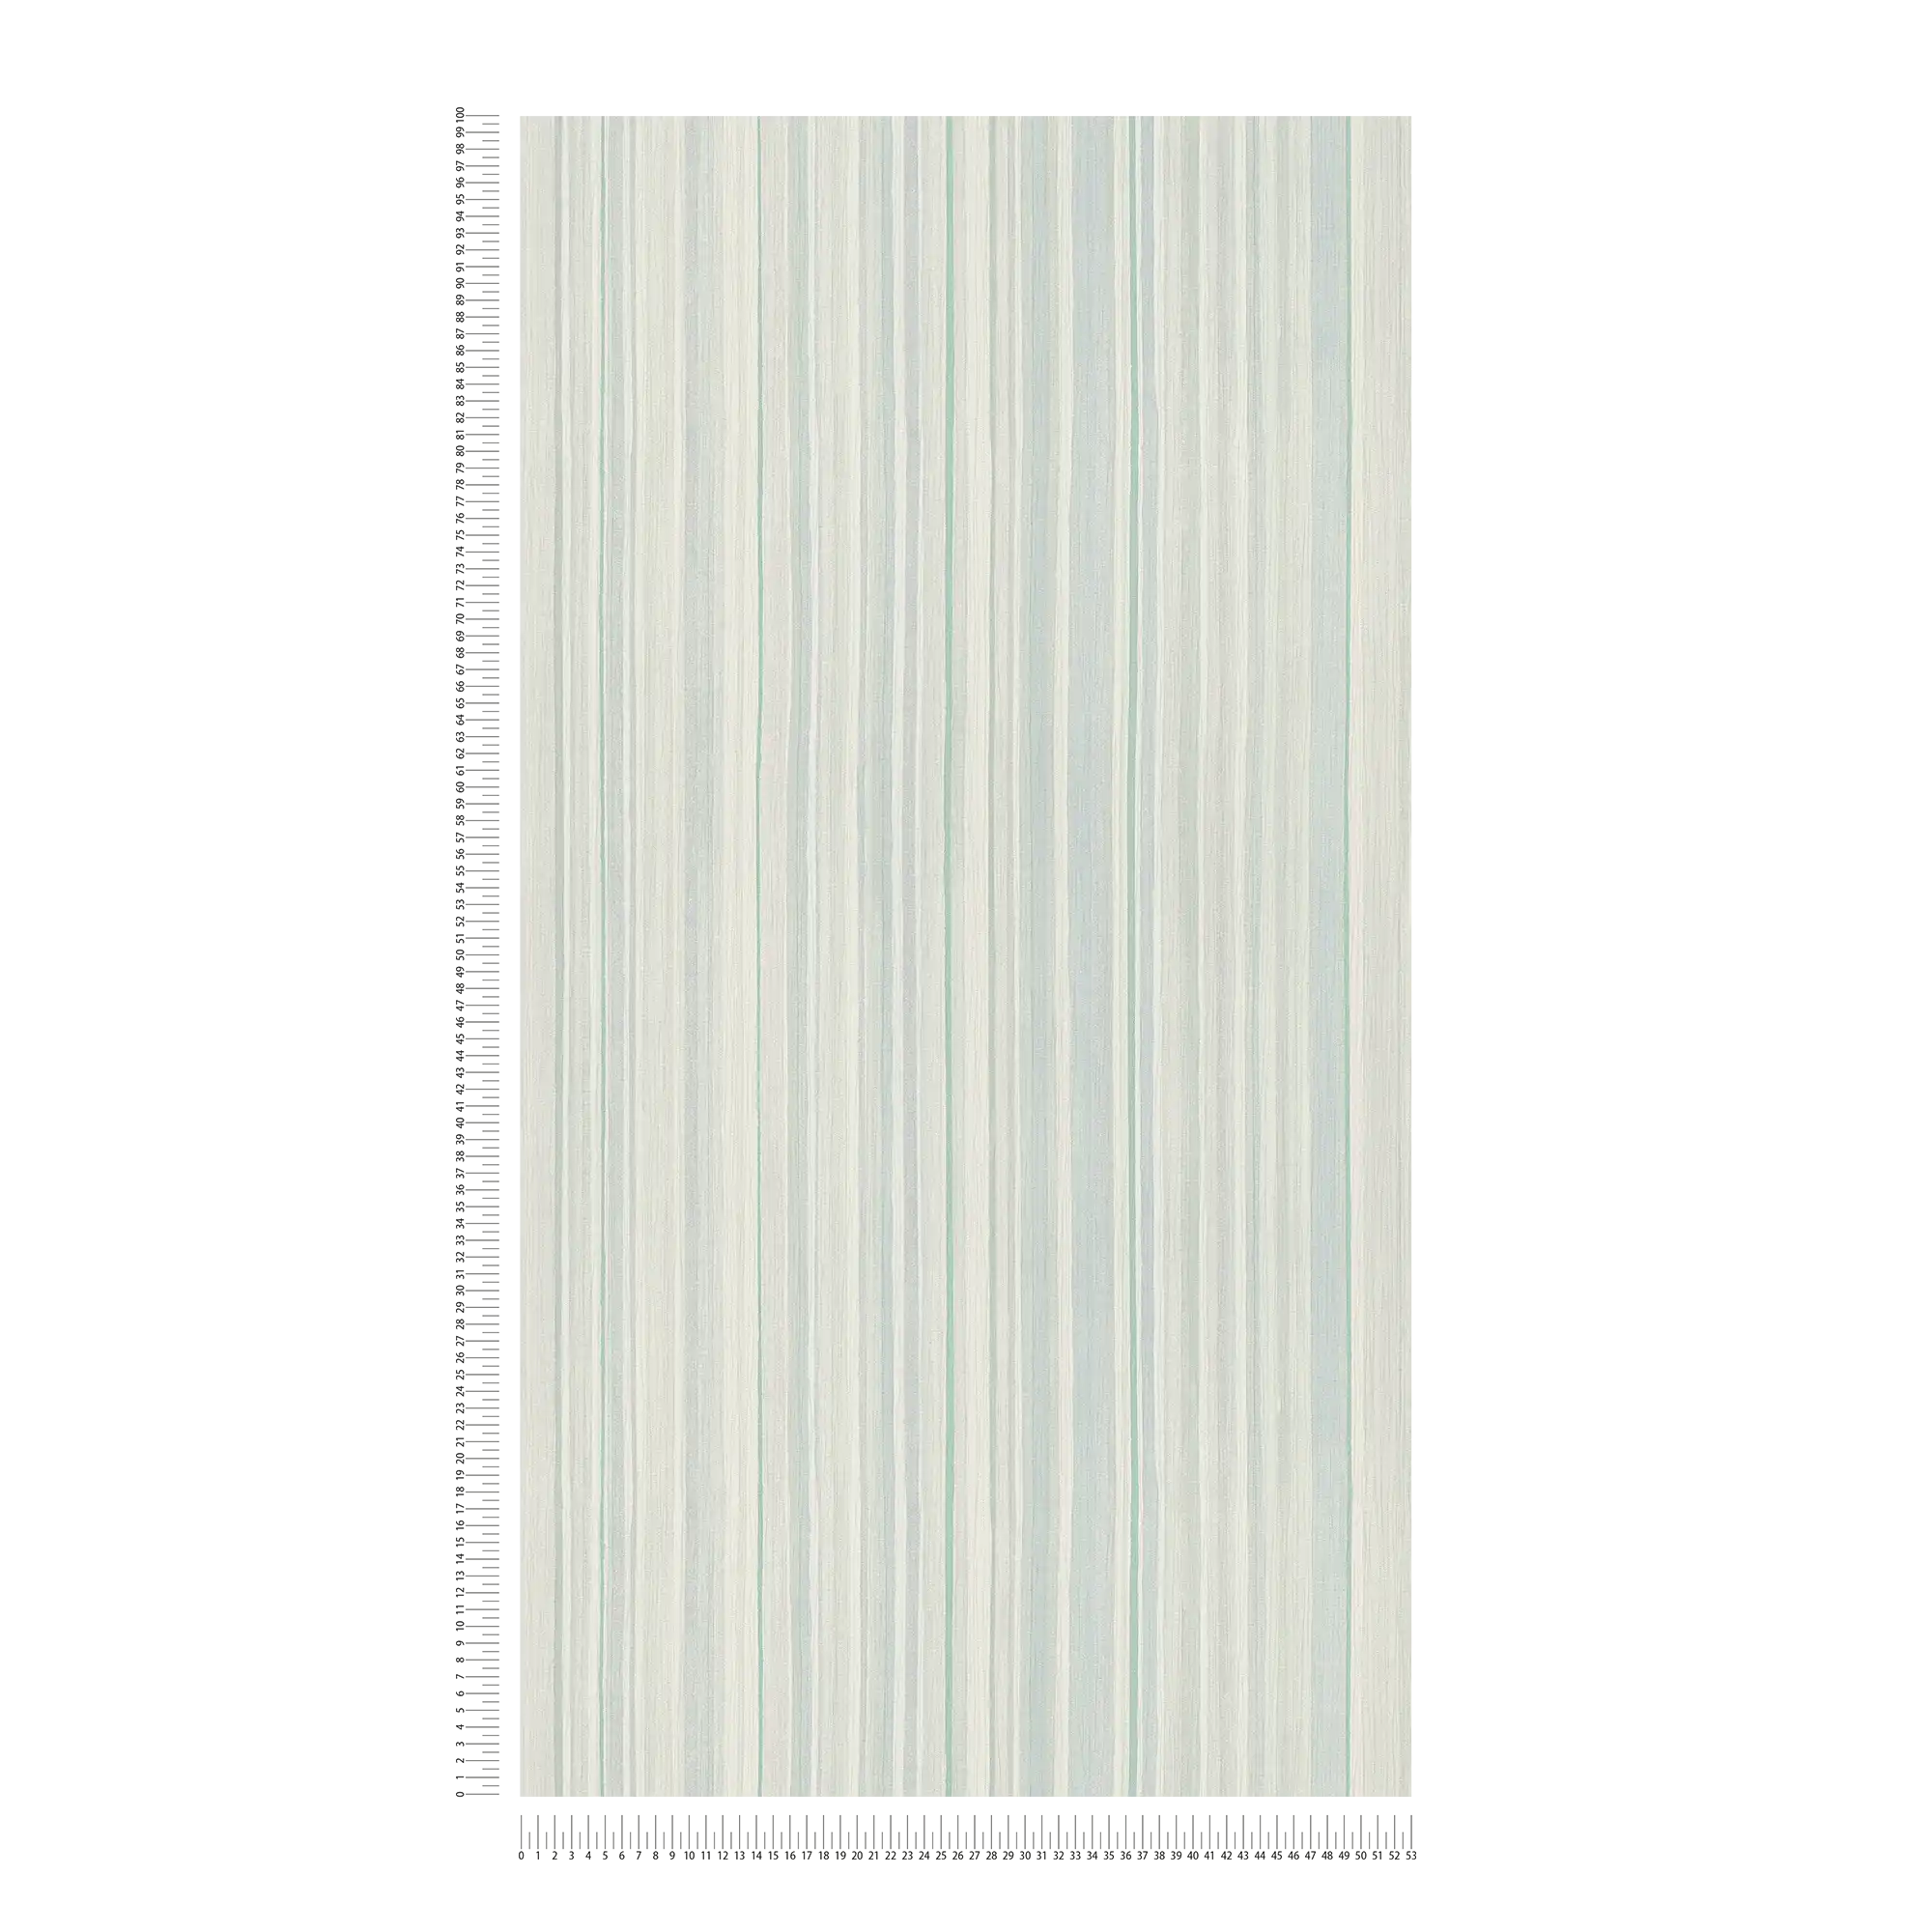             Papel pintado a rayas con diseño de líneas - azul, verde, gris
        